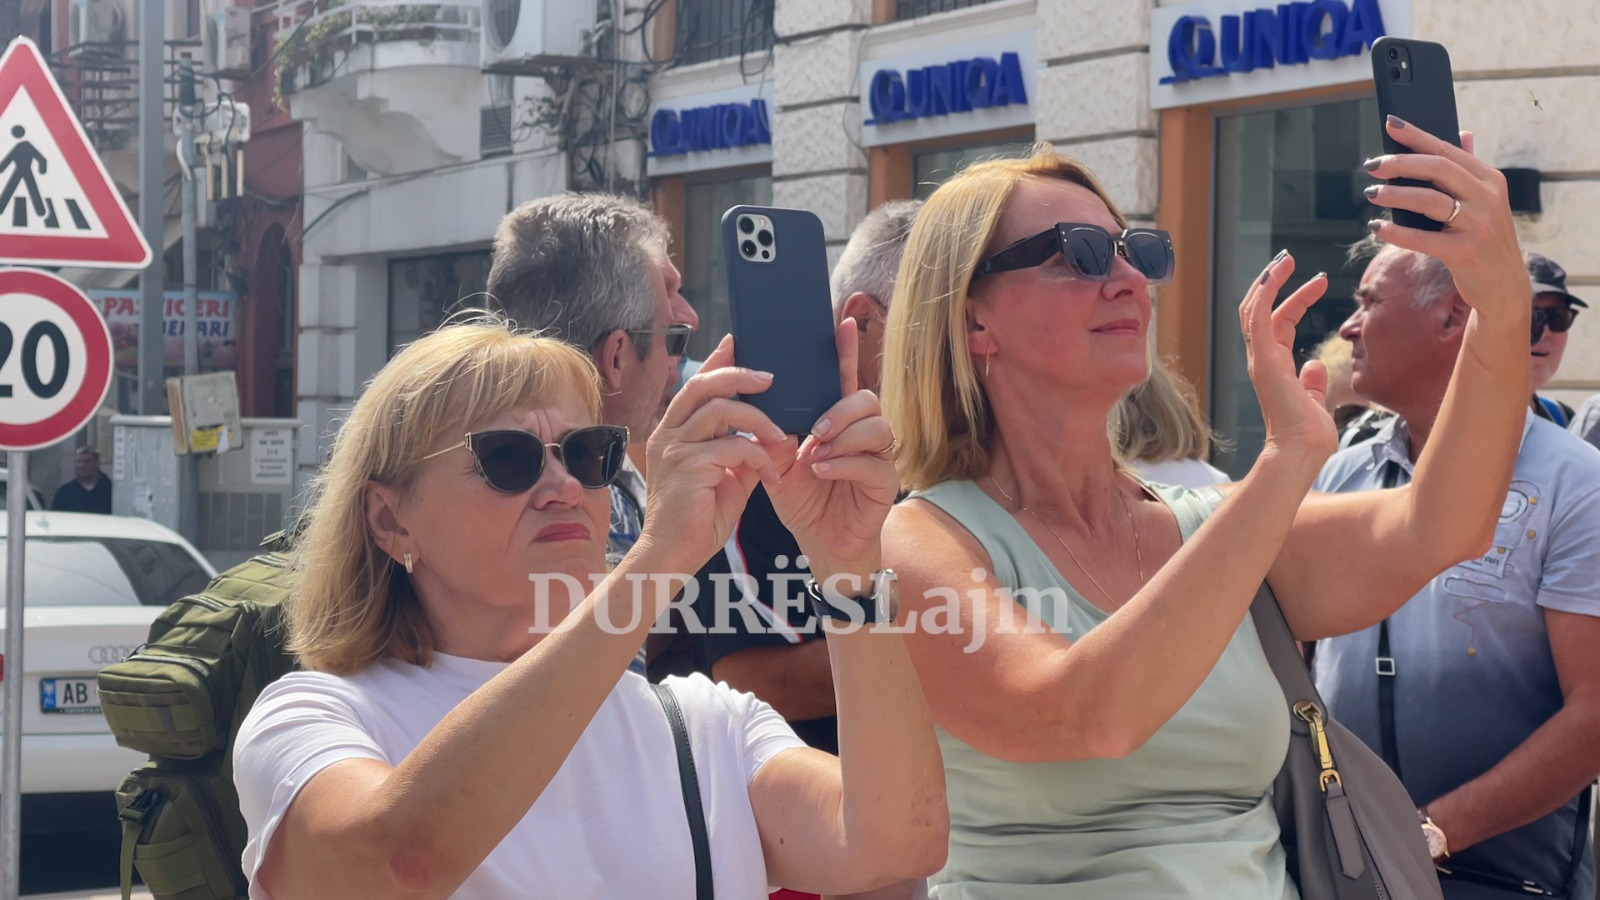 Në Durrës po bëhet “turizëm strategjik”, pse preferohet në vjeshtë qyteti bregdetar (VIDEO)